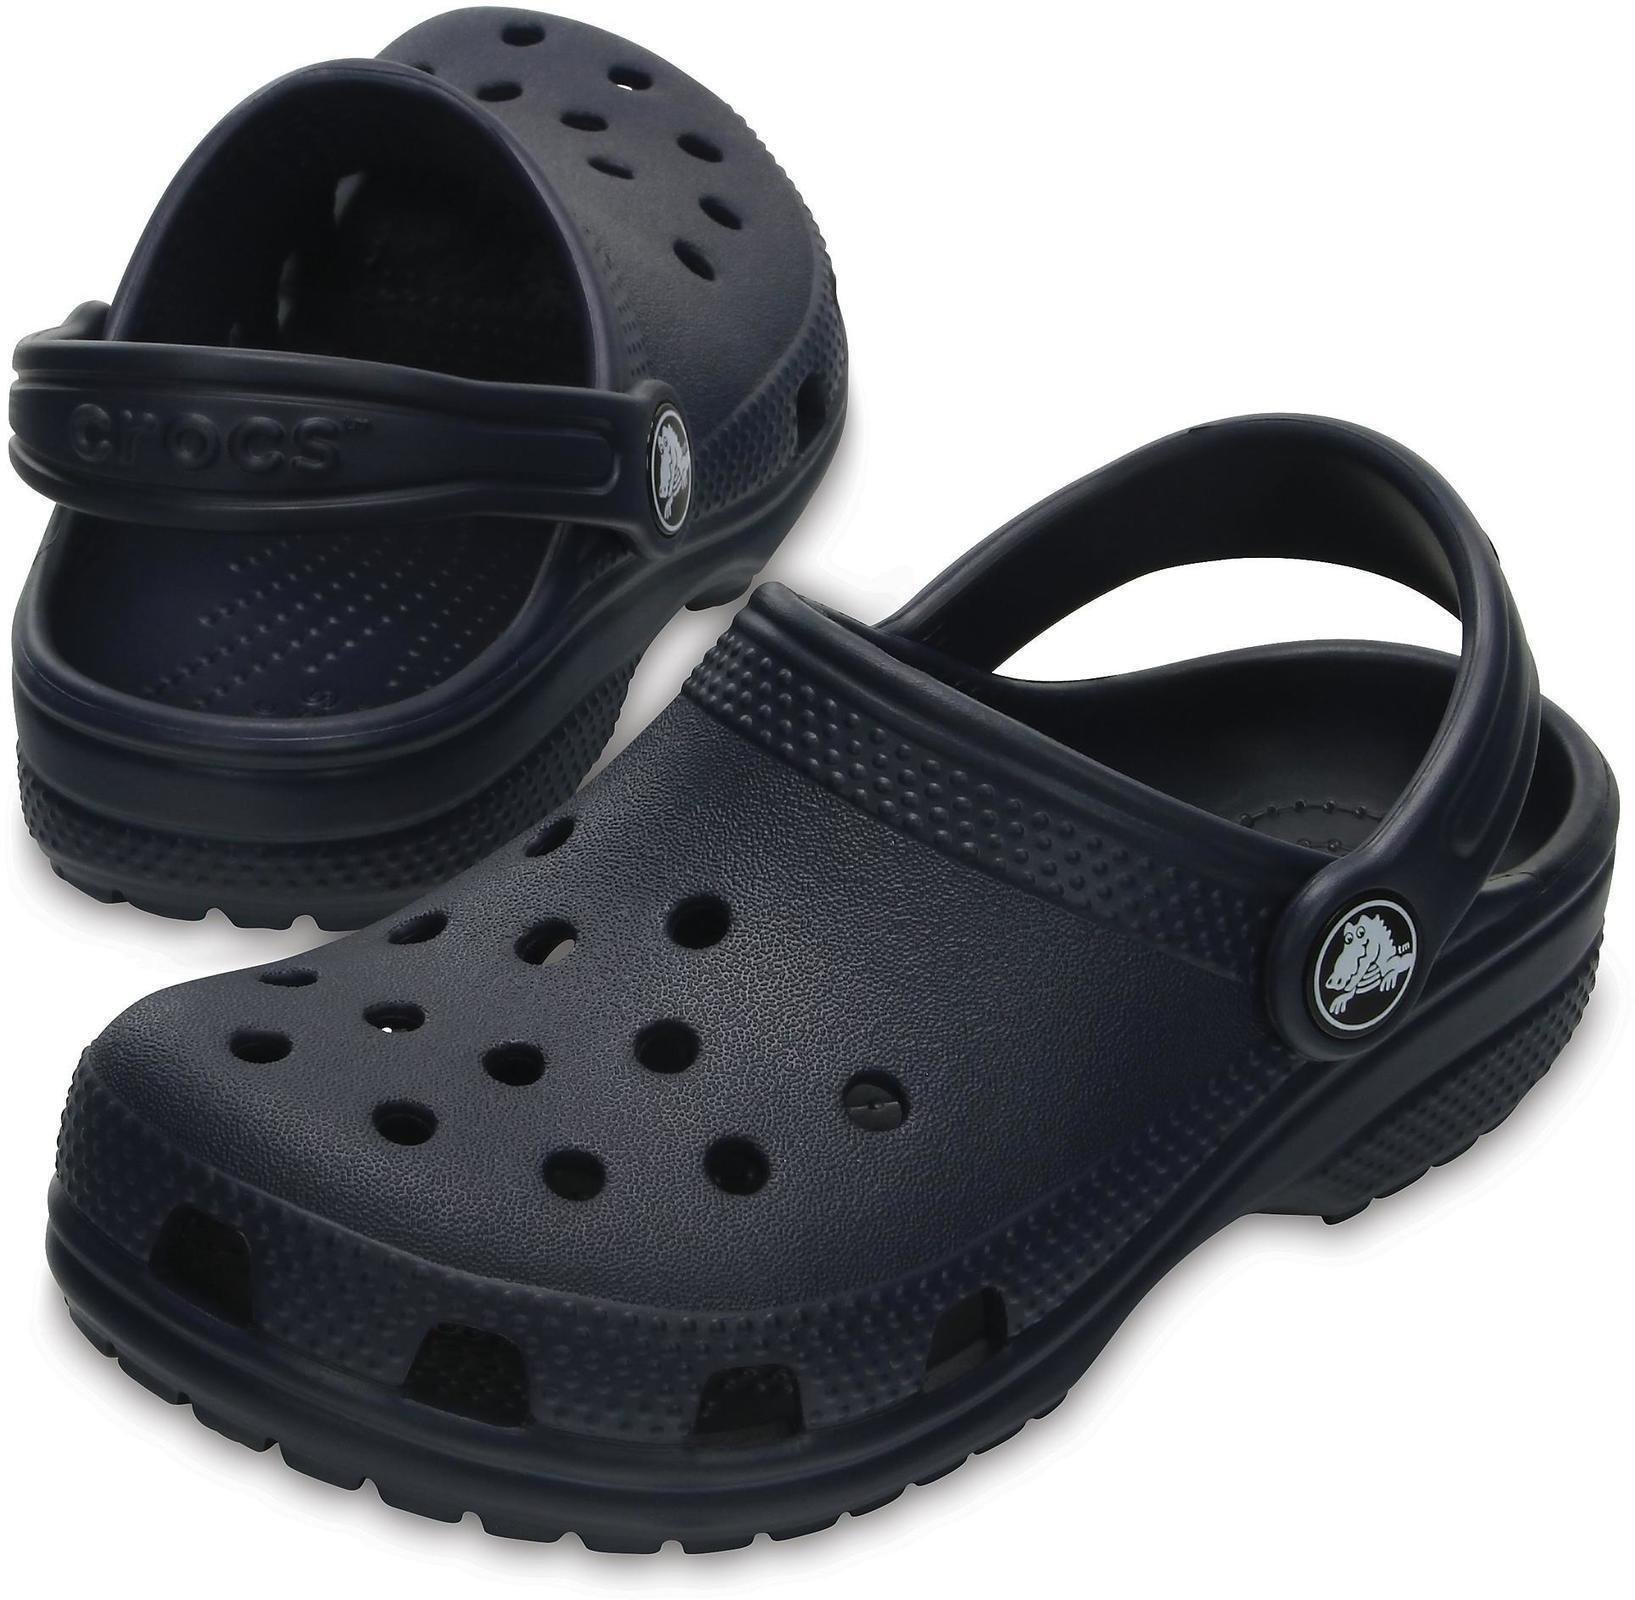 Dječje cipele za jedrenje Crocs Kids' Classic Clog Navy 33-34